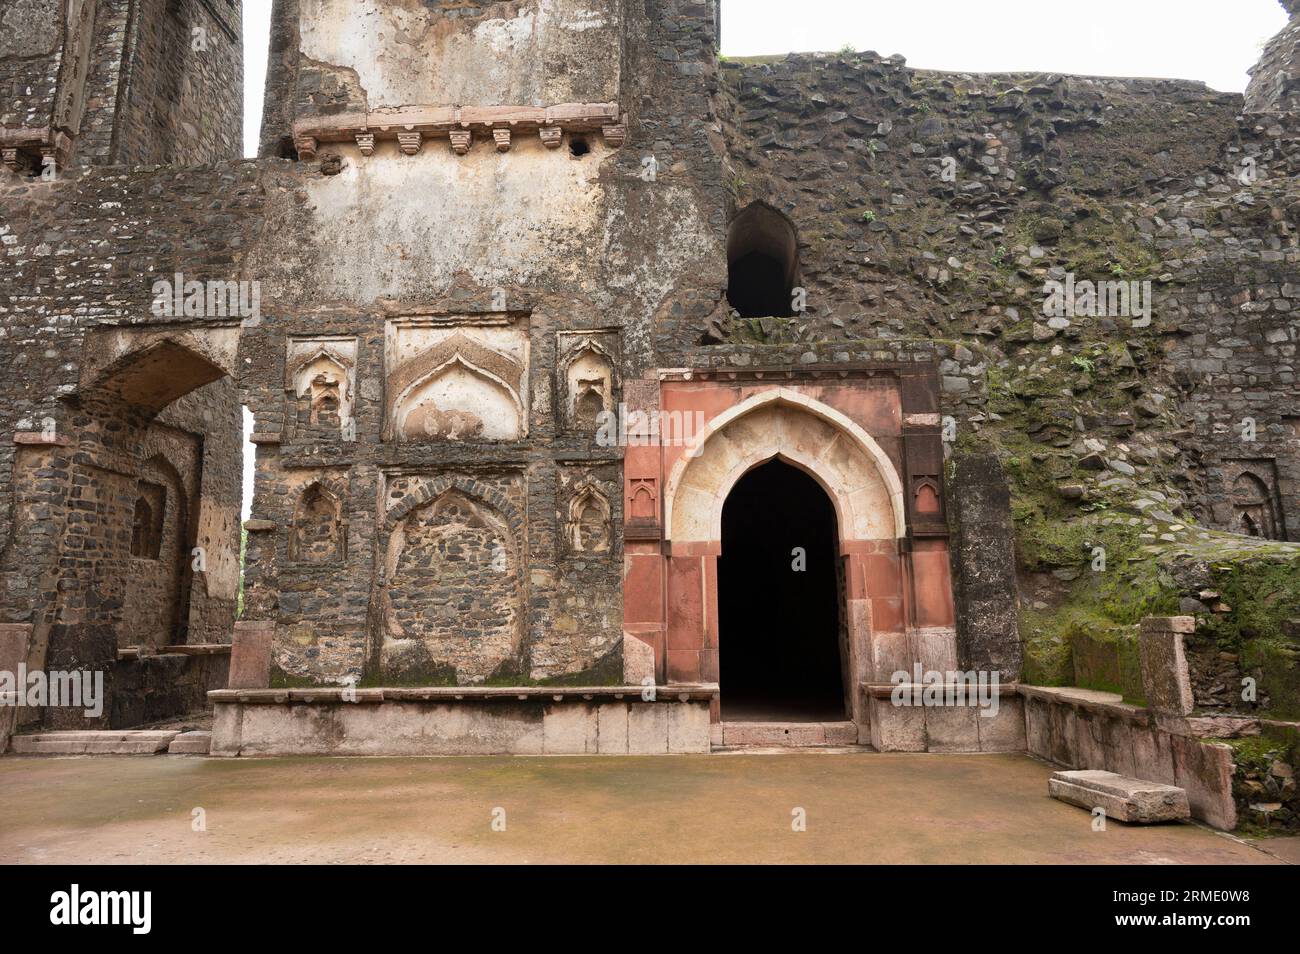 Ruins of Gada Shah's Shop, located in Mandu, Madhya Pradesh, India Stock Photo